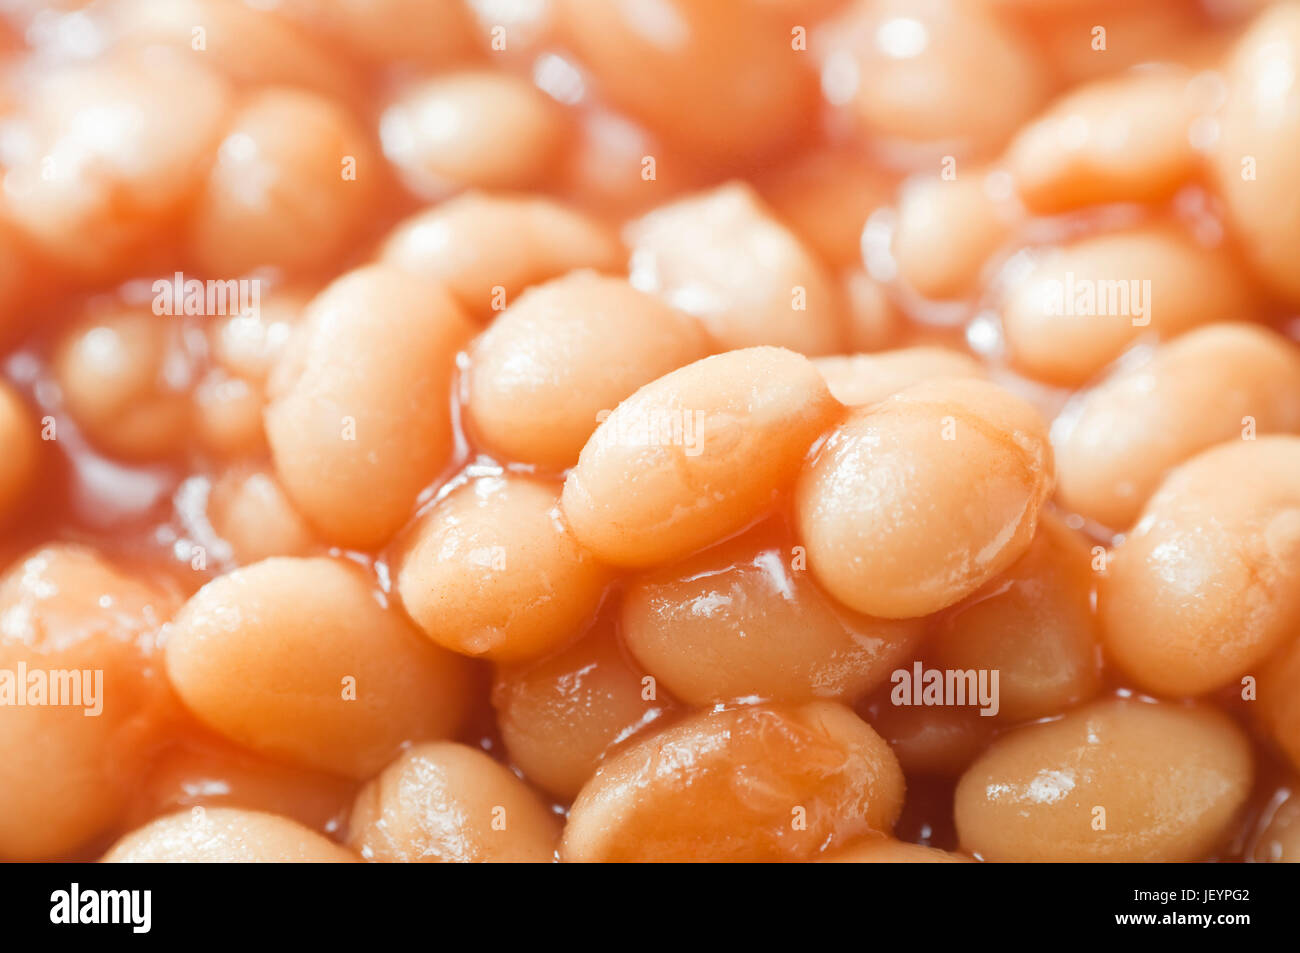 Cuocere i fagioli cotti al forno con salsa di pomodoro in close-up. Il riempimento di tutta la trama. Foto Stock